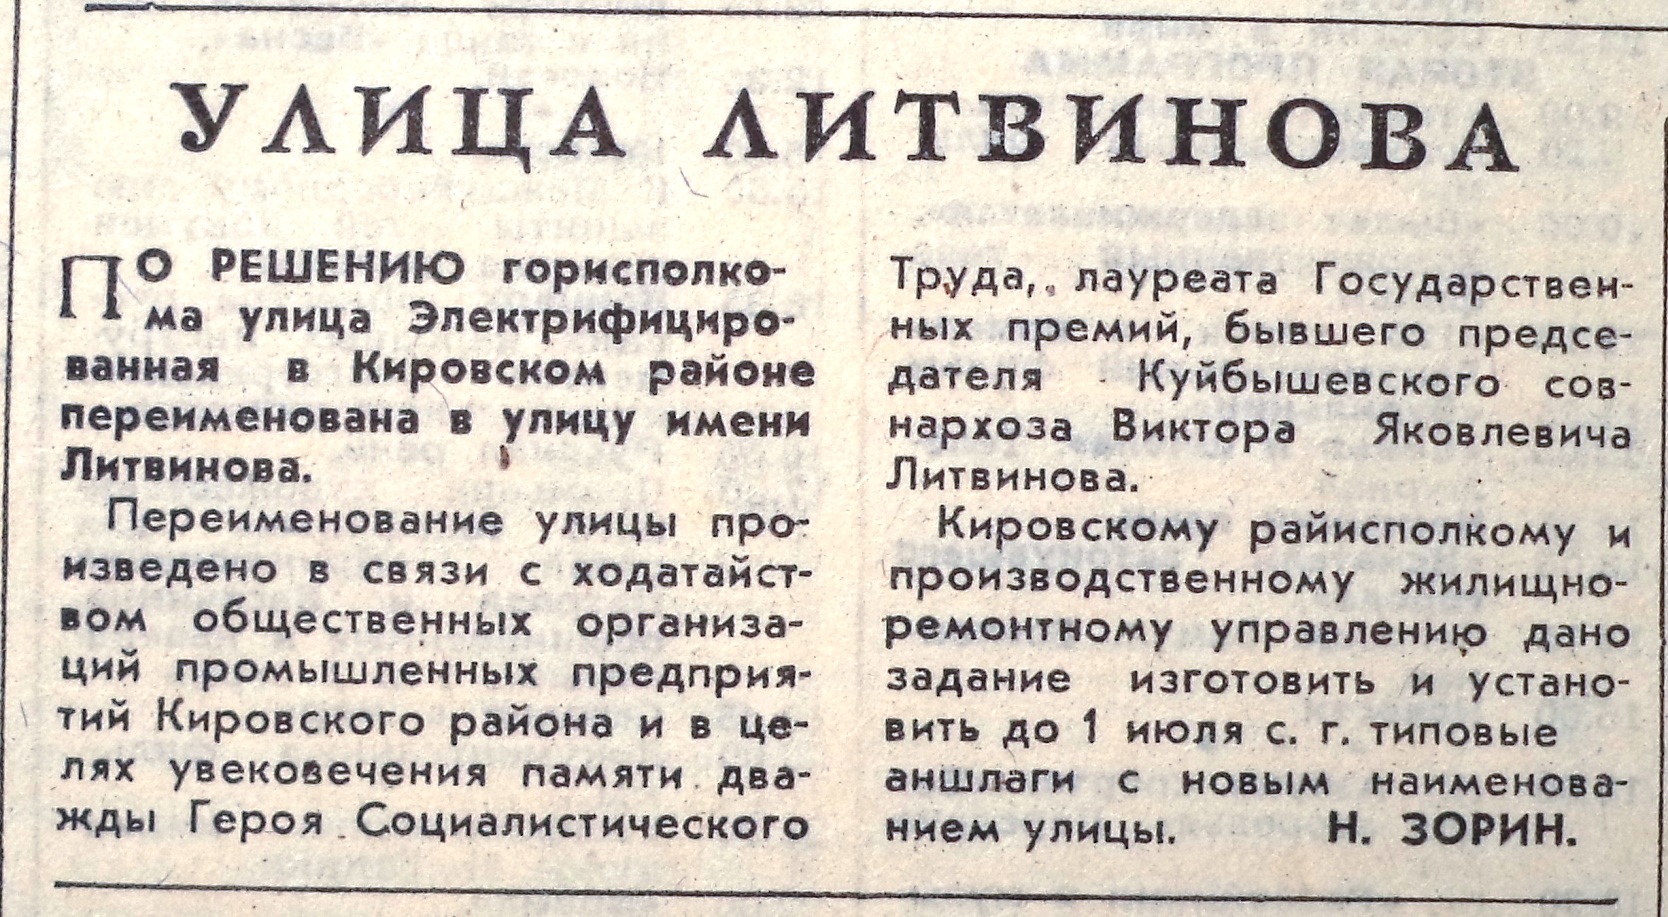 ФОТО-Литвинова-52-ВЗя-1984-05-28-переименование Электриф. в Литвин